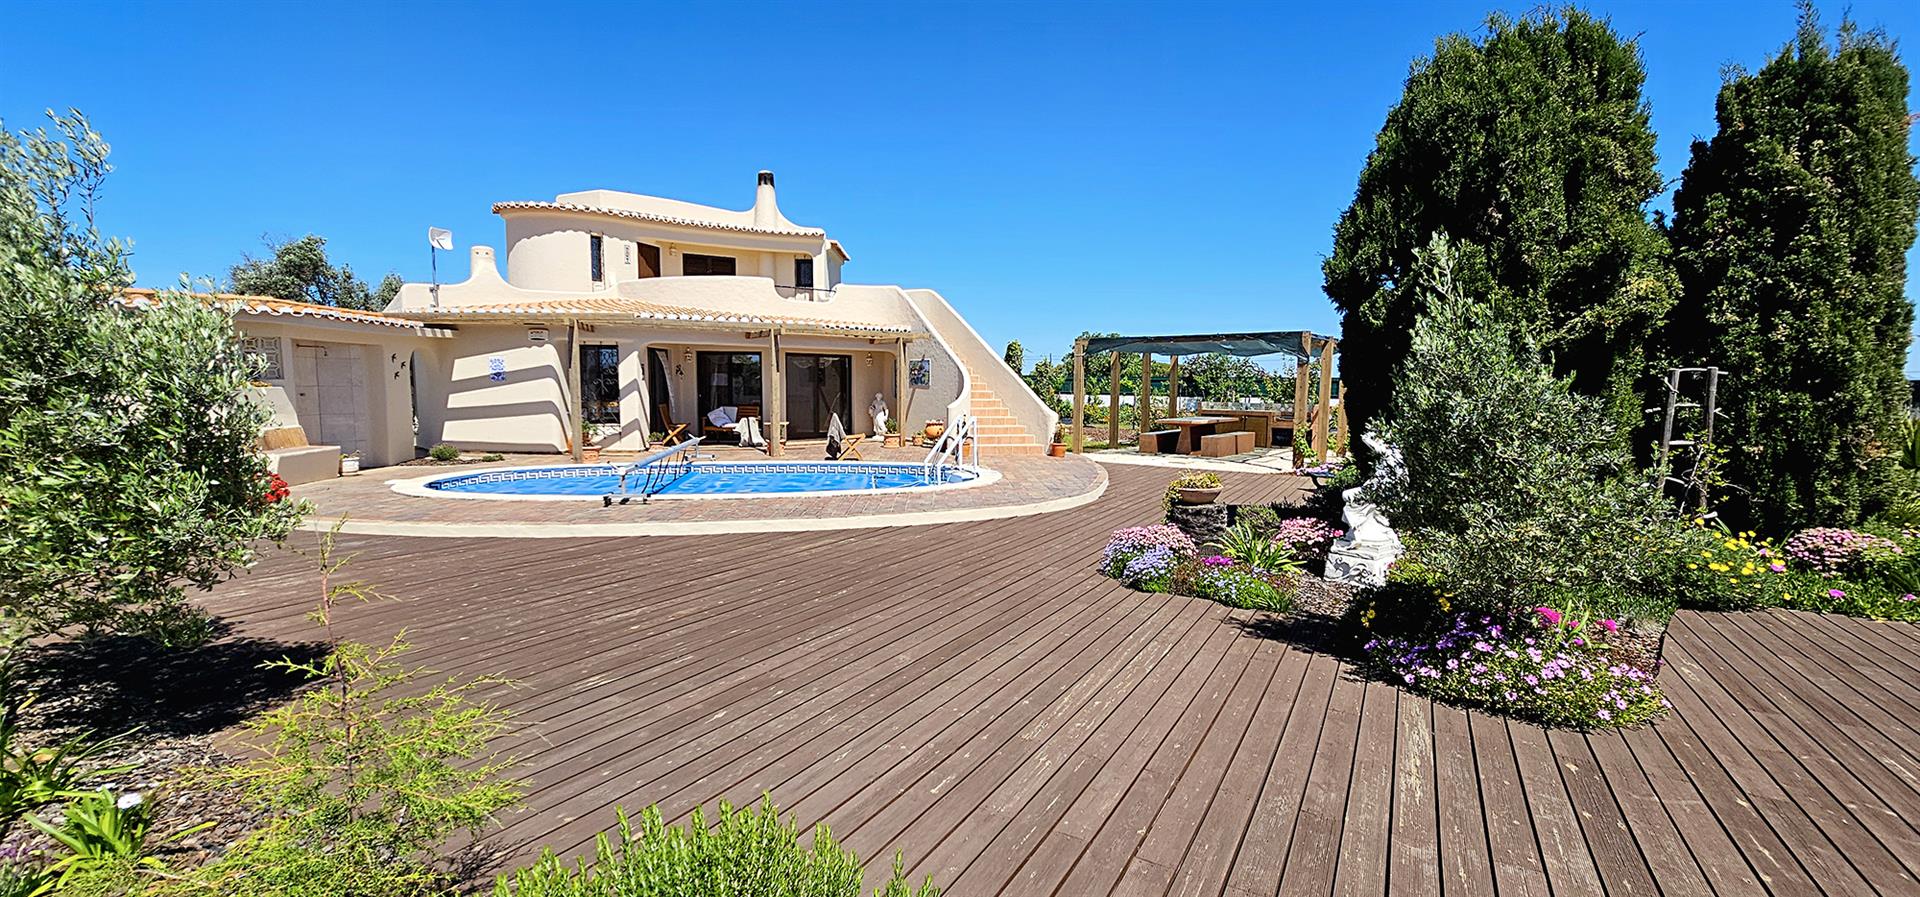 Velkommen til dit fremtidige hjem i smukke Algarve